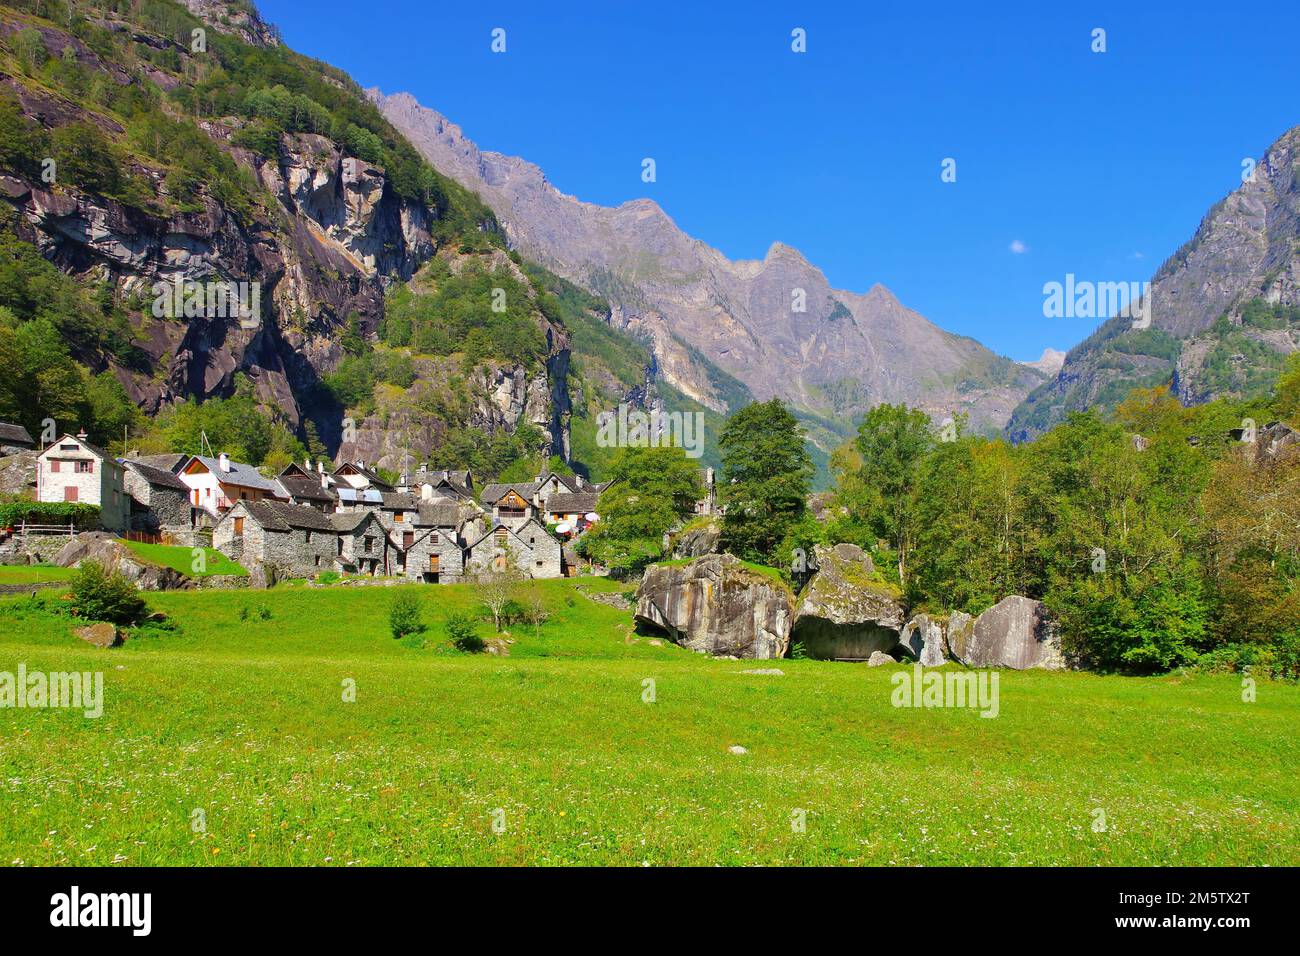 Le petit hameau de Sonlerto dans la vallée de Bavona, Tessin en Suisse Banque D'Images